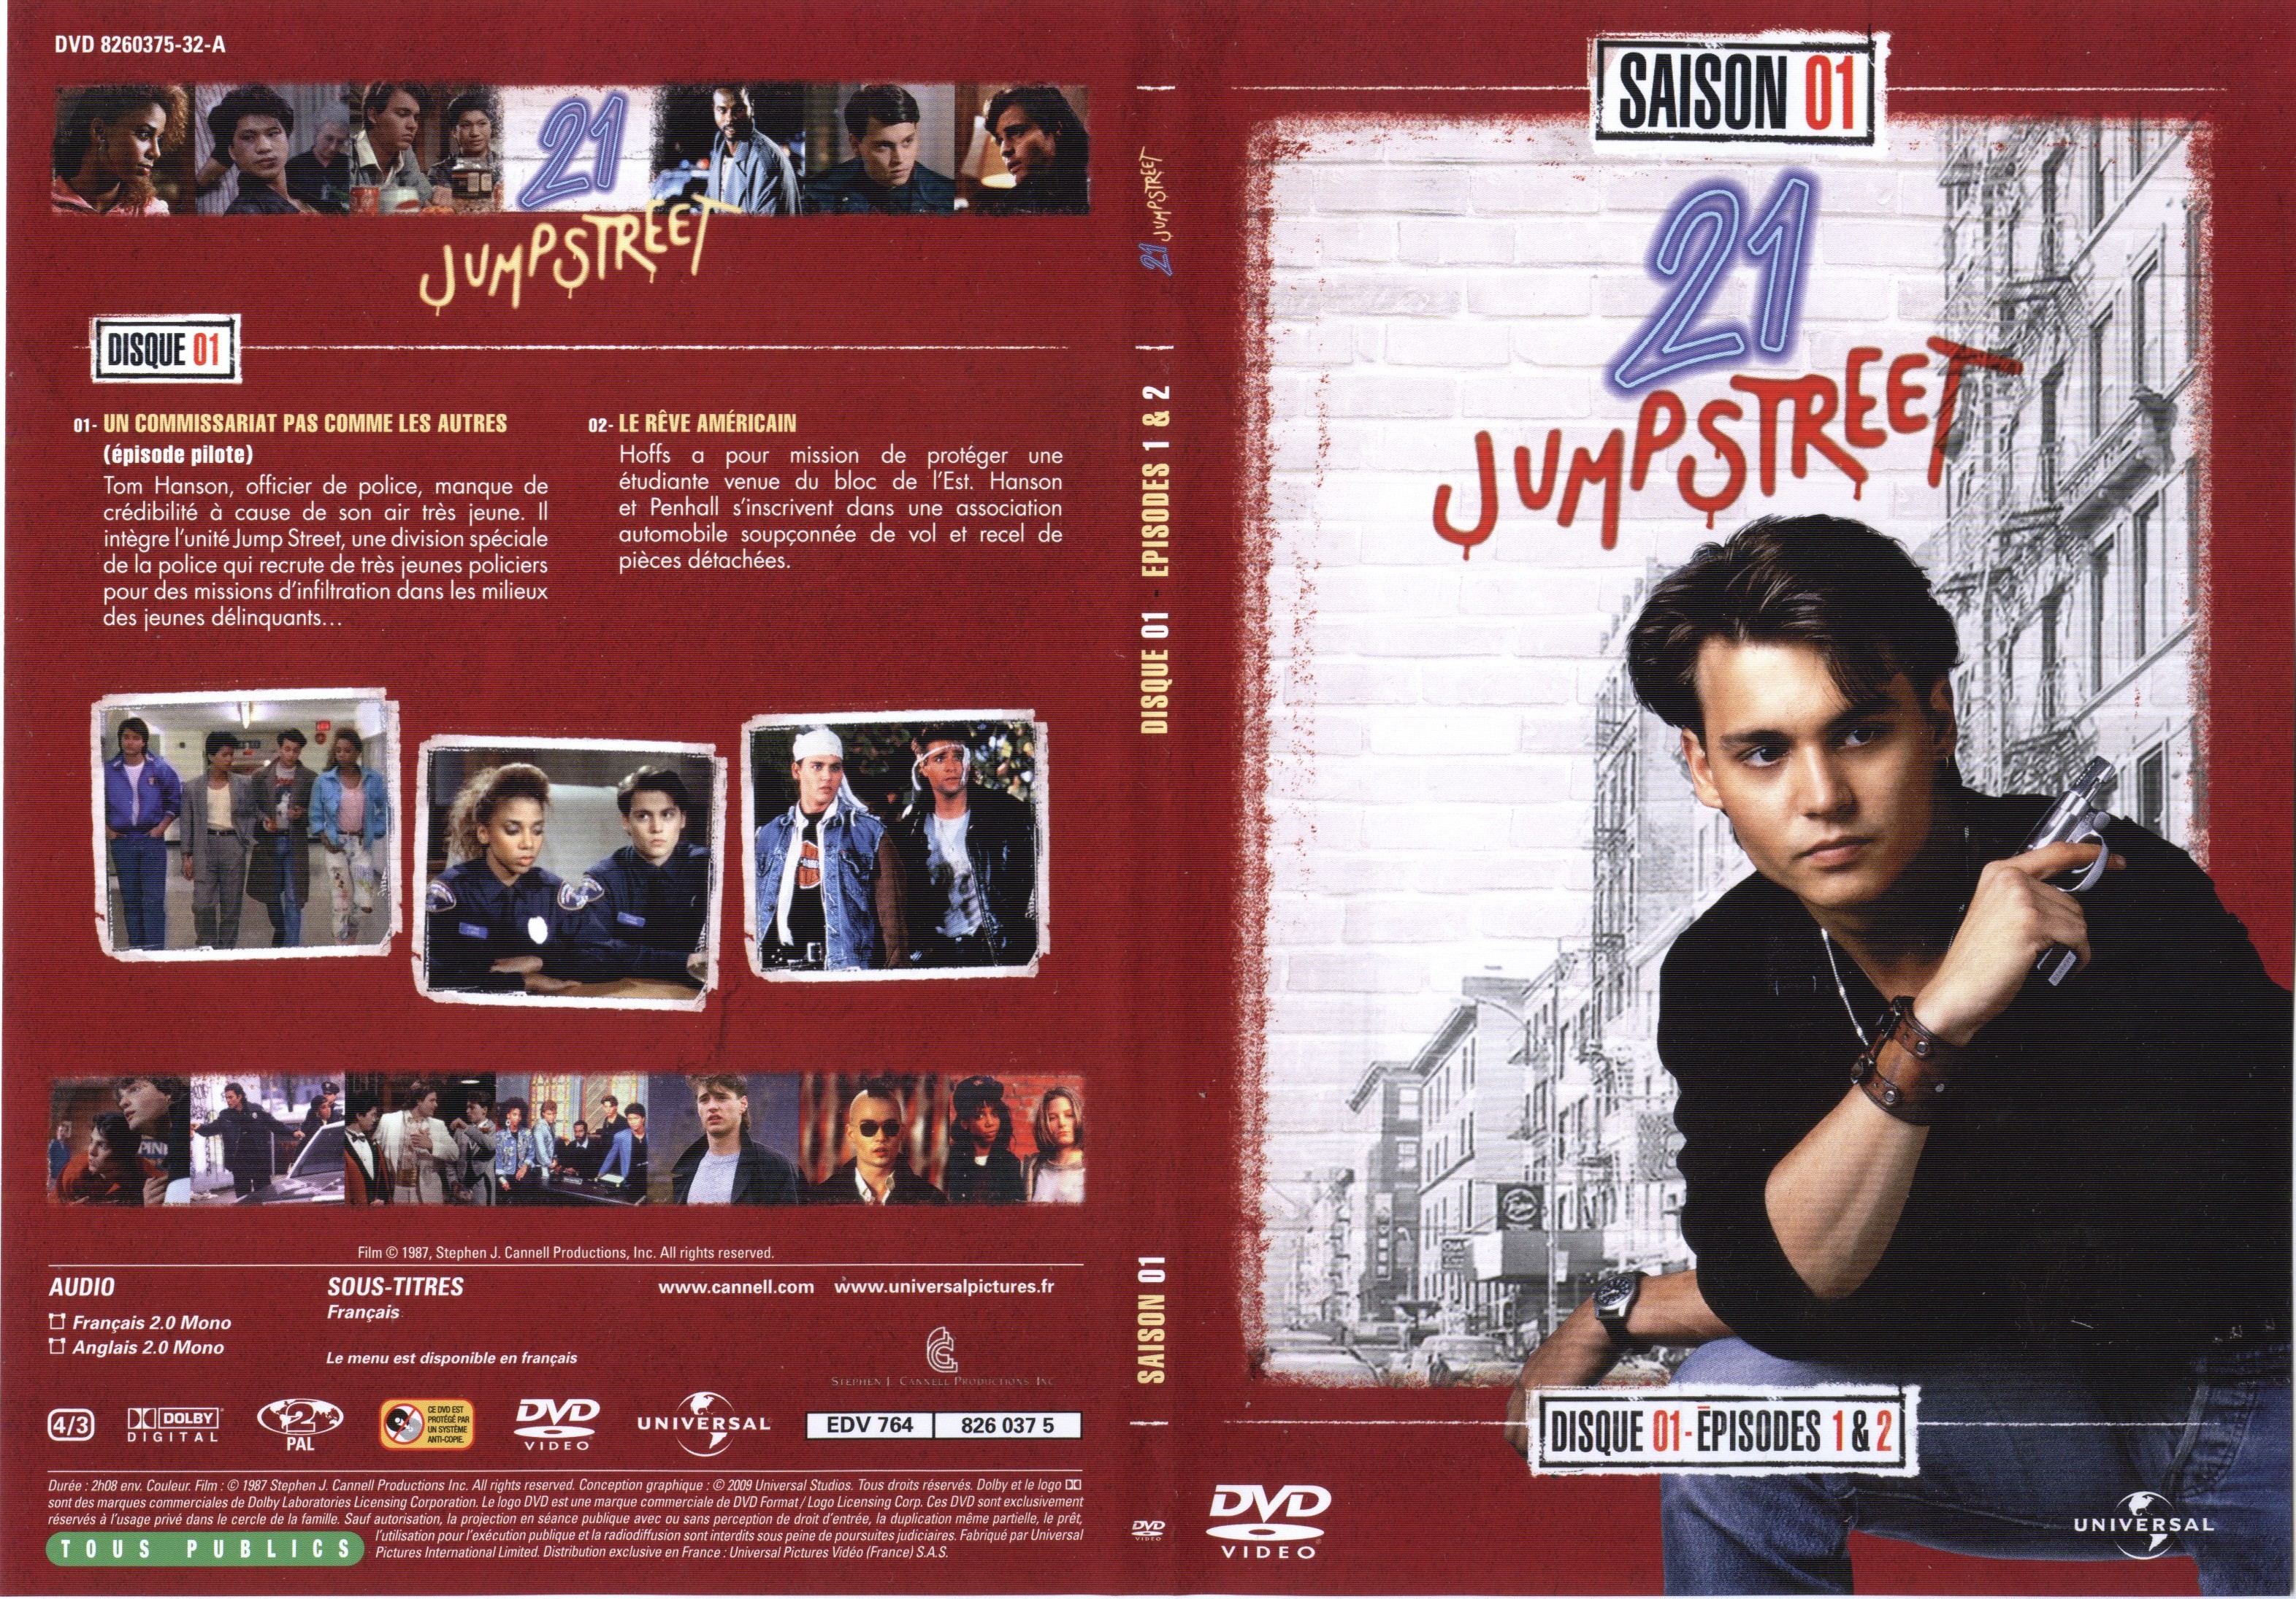 Jaquette DVD 21 jump street Saison 01 DVD 01